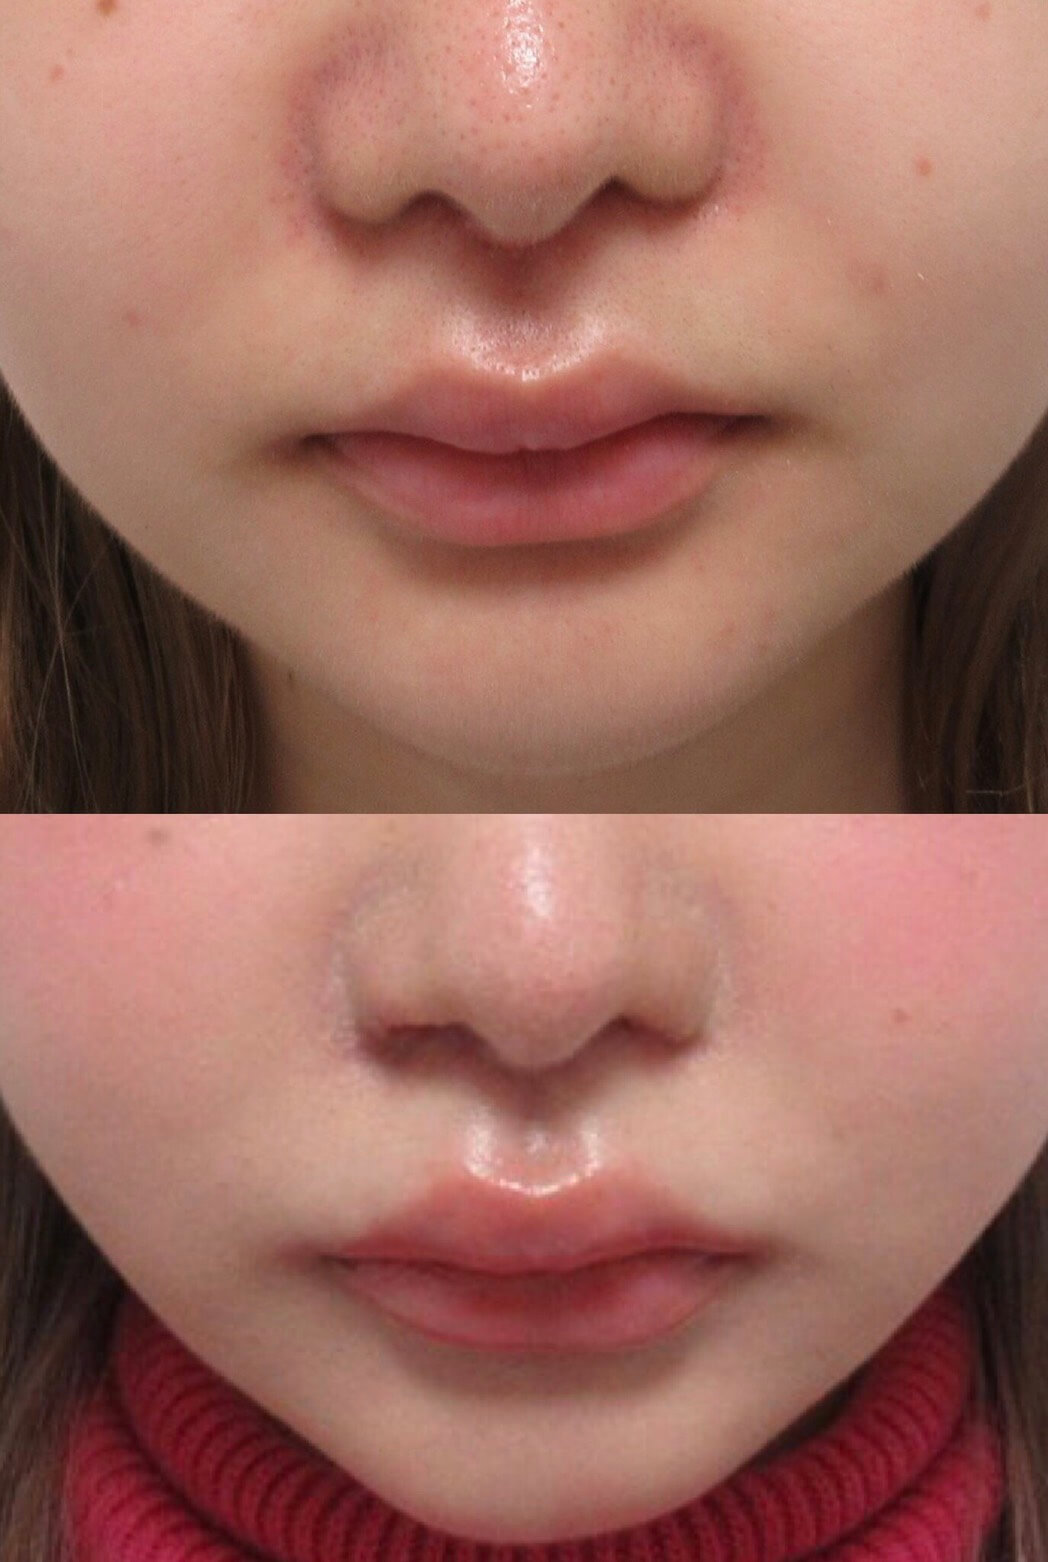 鼻孔縁挙上術について 肉厚なお鼻 垂れた小鼻の改善 Taクリニック公式整形ブログ 画像 値段 美容整形 美容外科